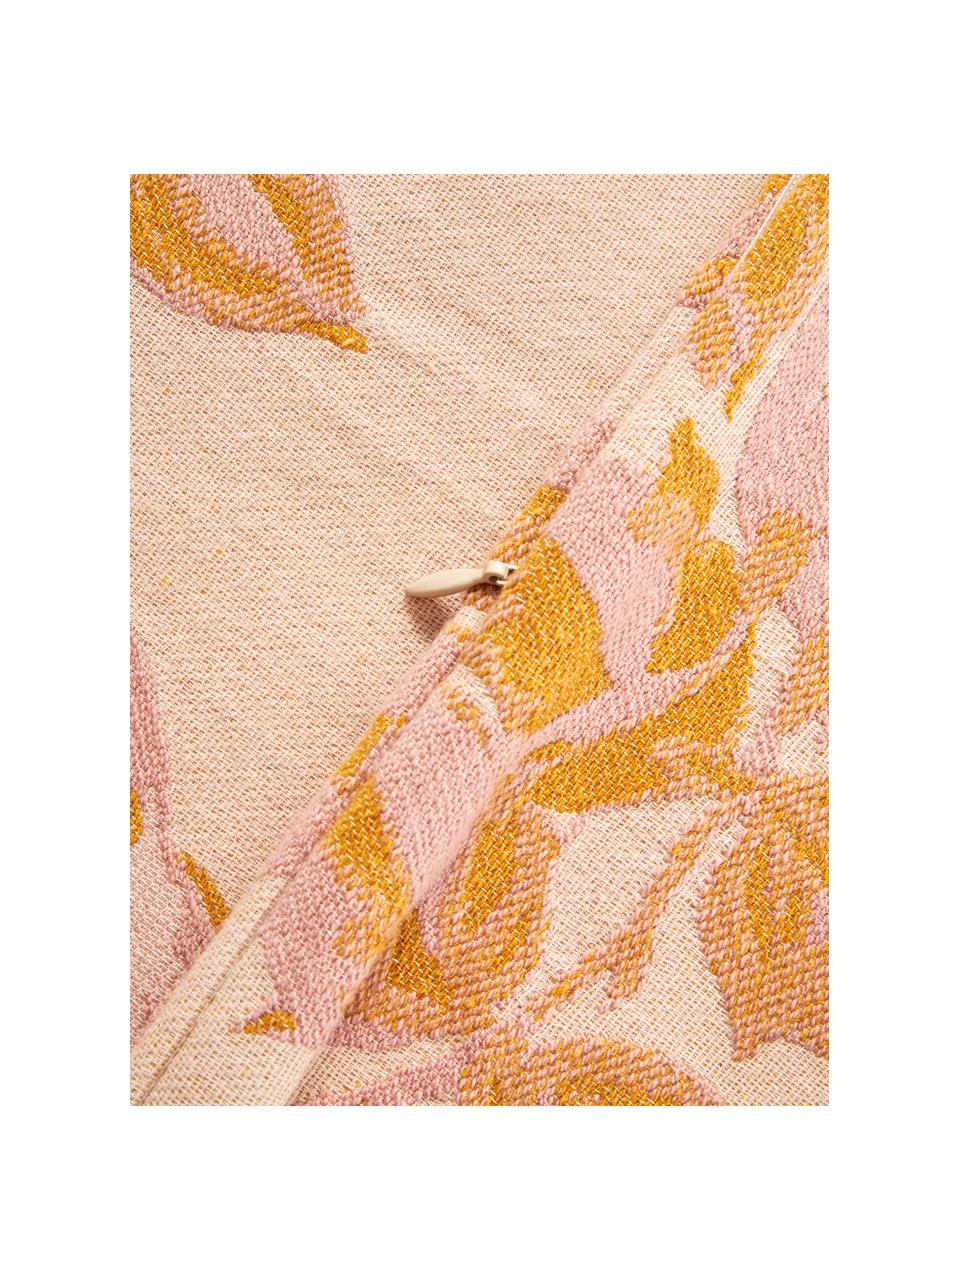 Federa arredo in cotone rosa-arancione Breight, 100% cotone, Rosa, arancione, beige, Larg. 50 x Lung. 50 cm